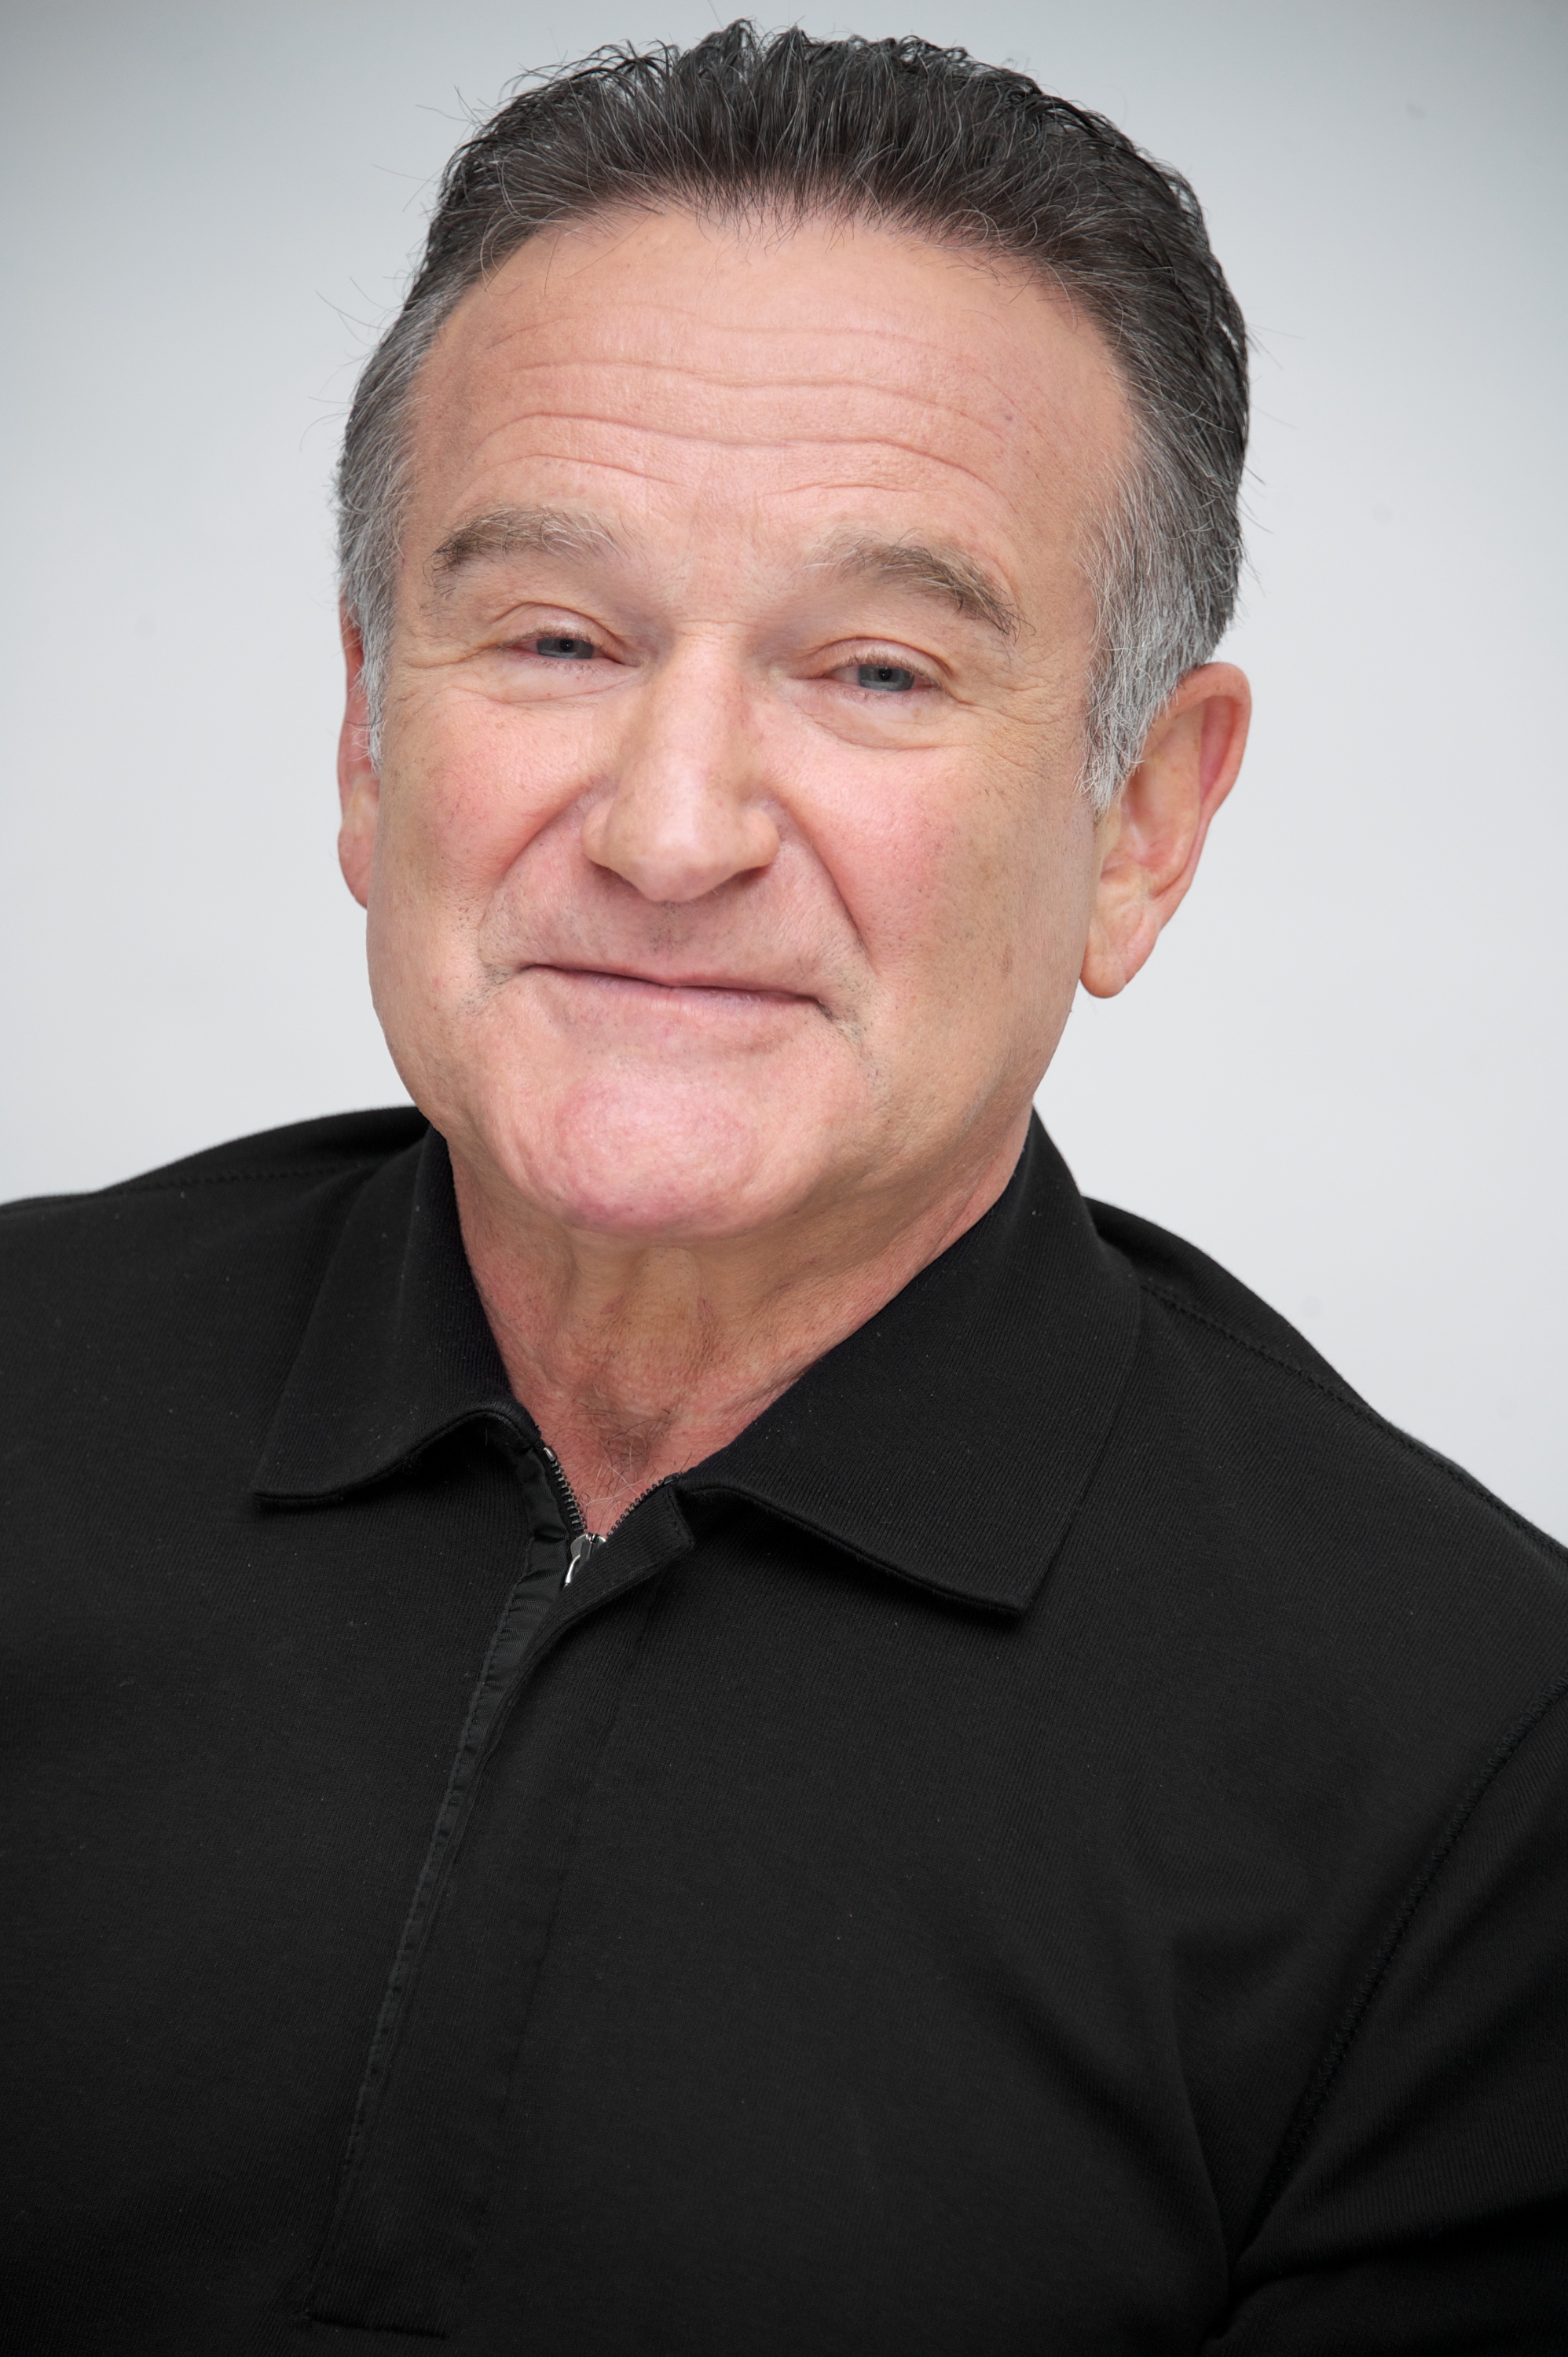 Robin Williams at 